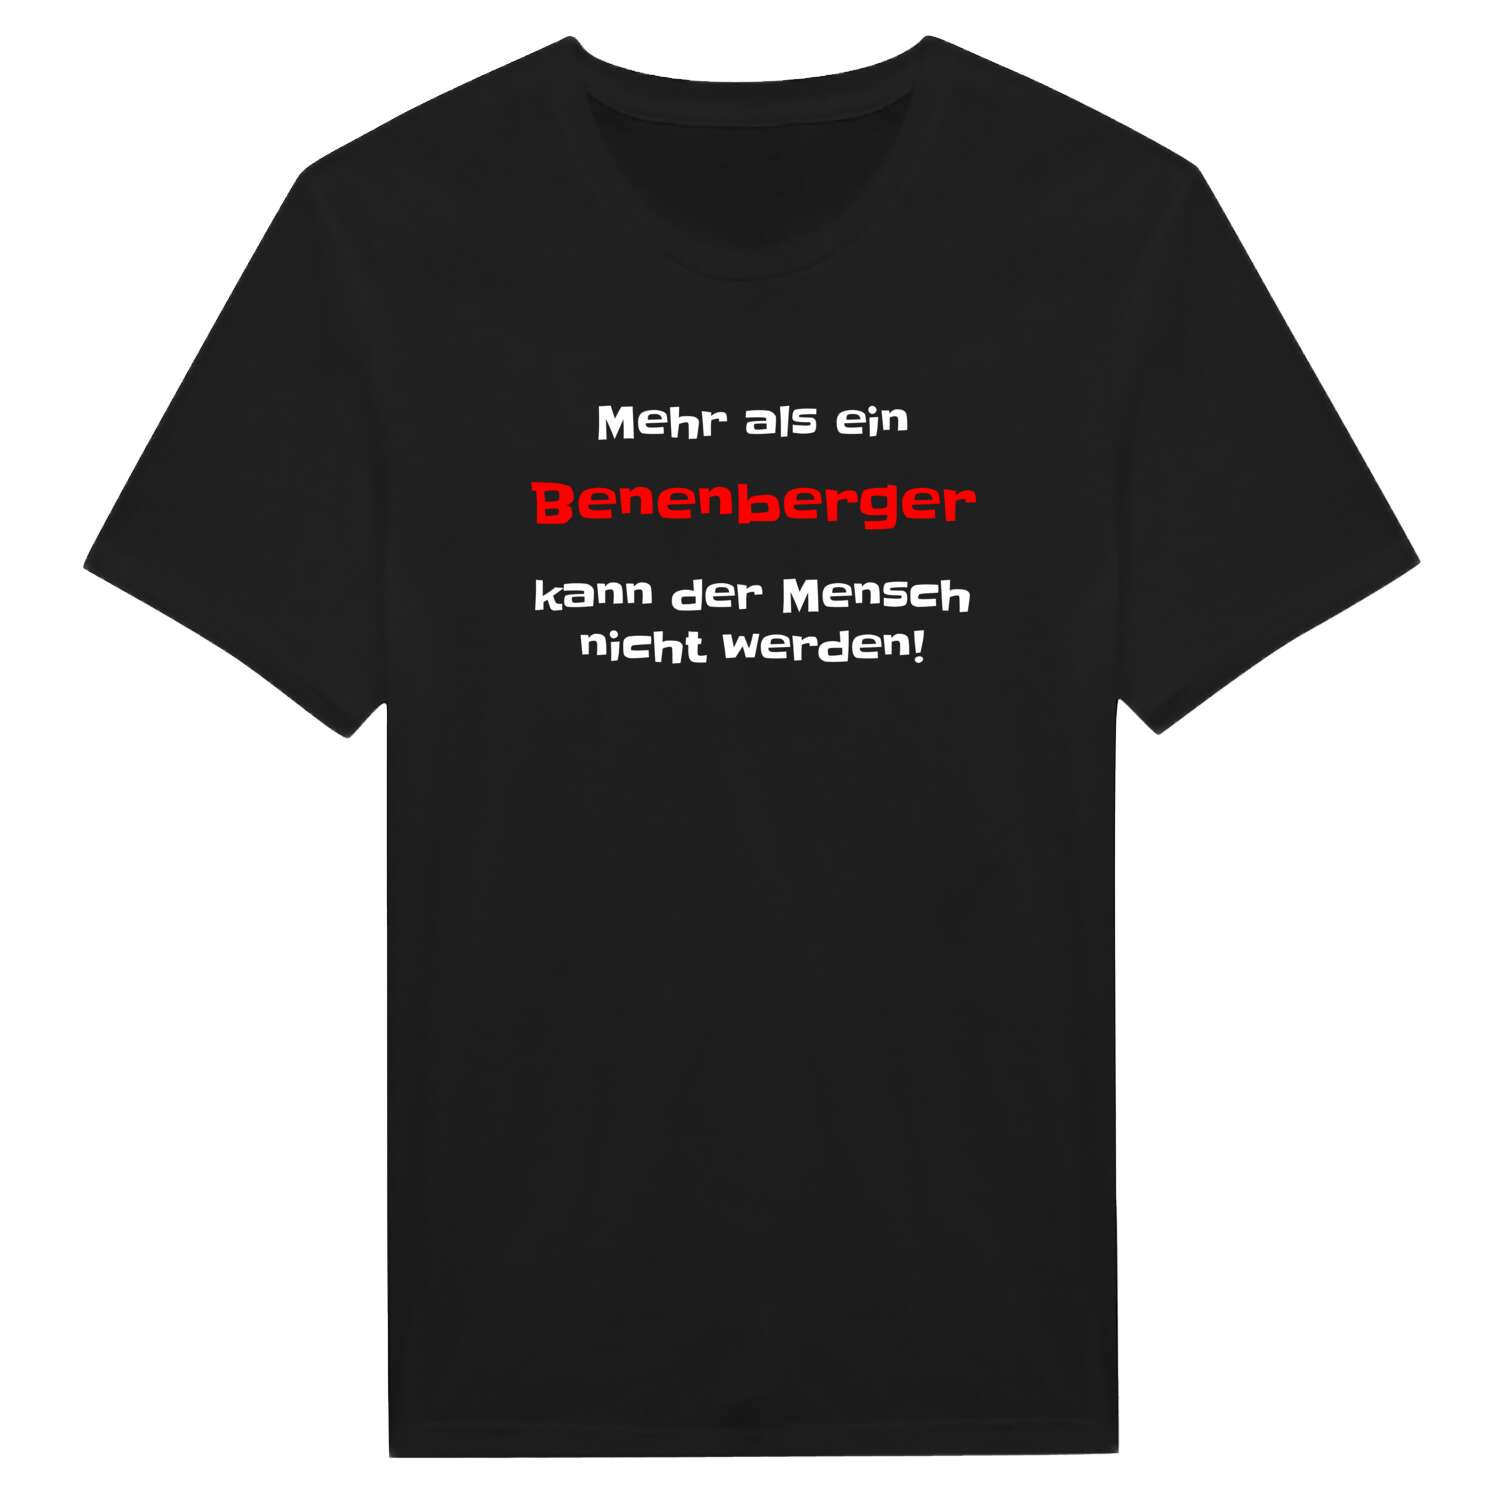 Benenberg T-Shirt »Mehr als ein«